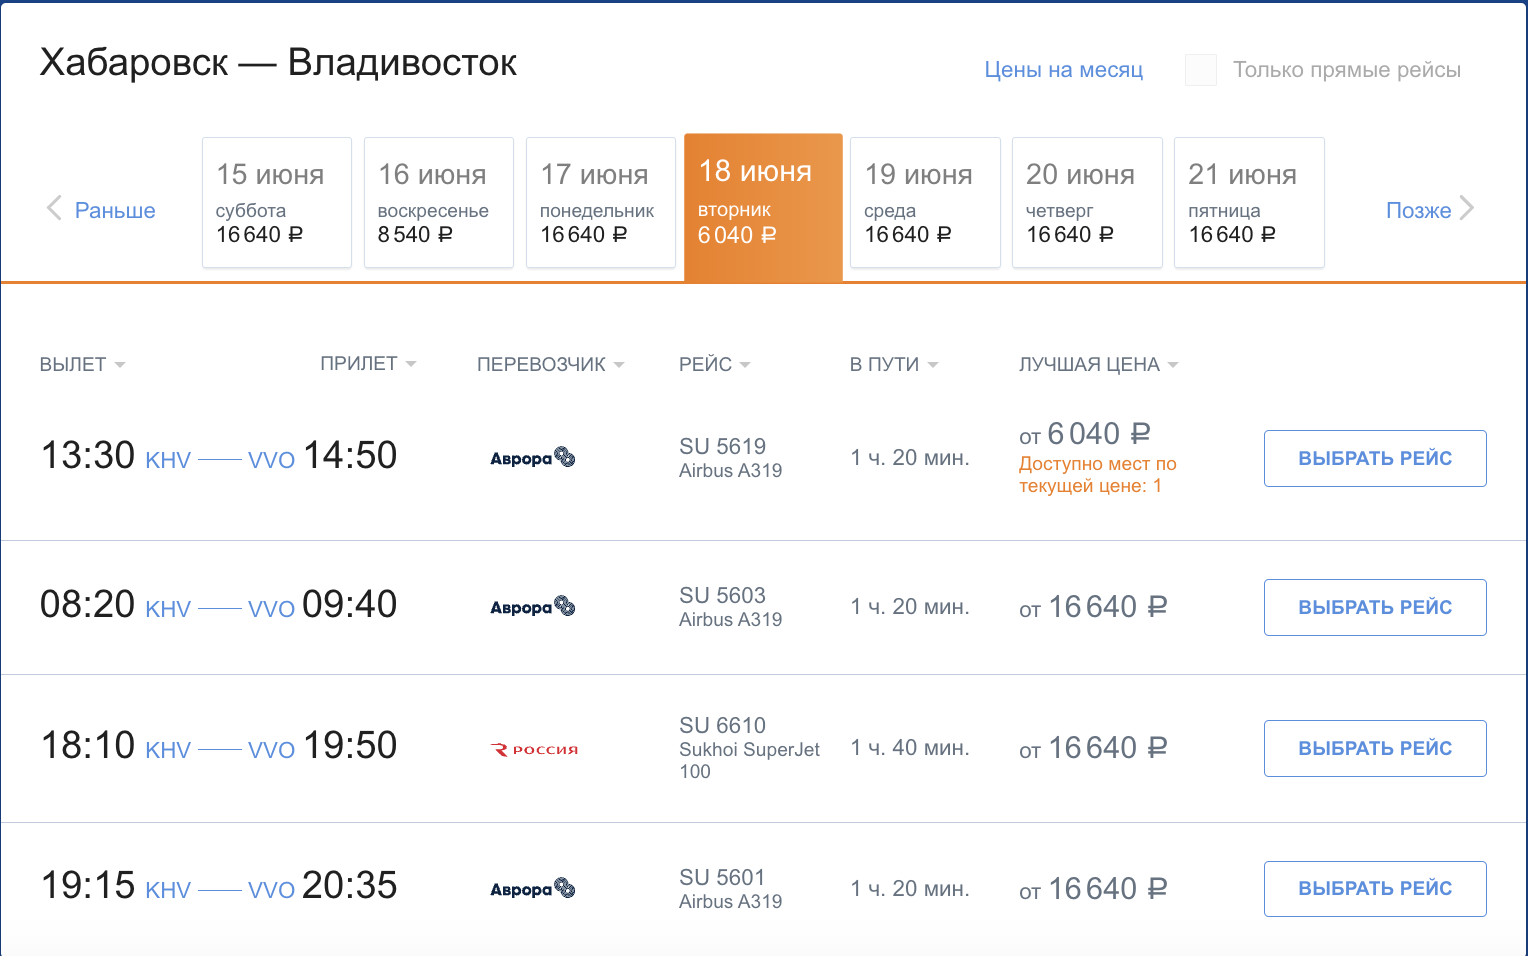 «Россия» полетит из Хабаровска в Магадан, Владивосток, на Камчатку и Сахалин. Билеты в продаже (ОЧЕНЬ ДОРОГИЕ!)